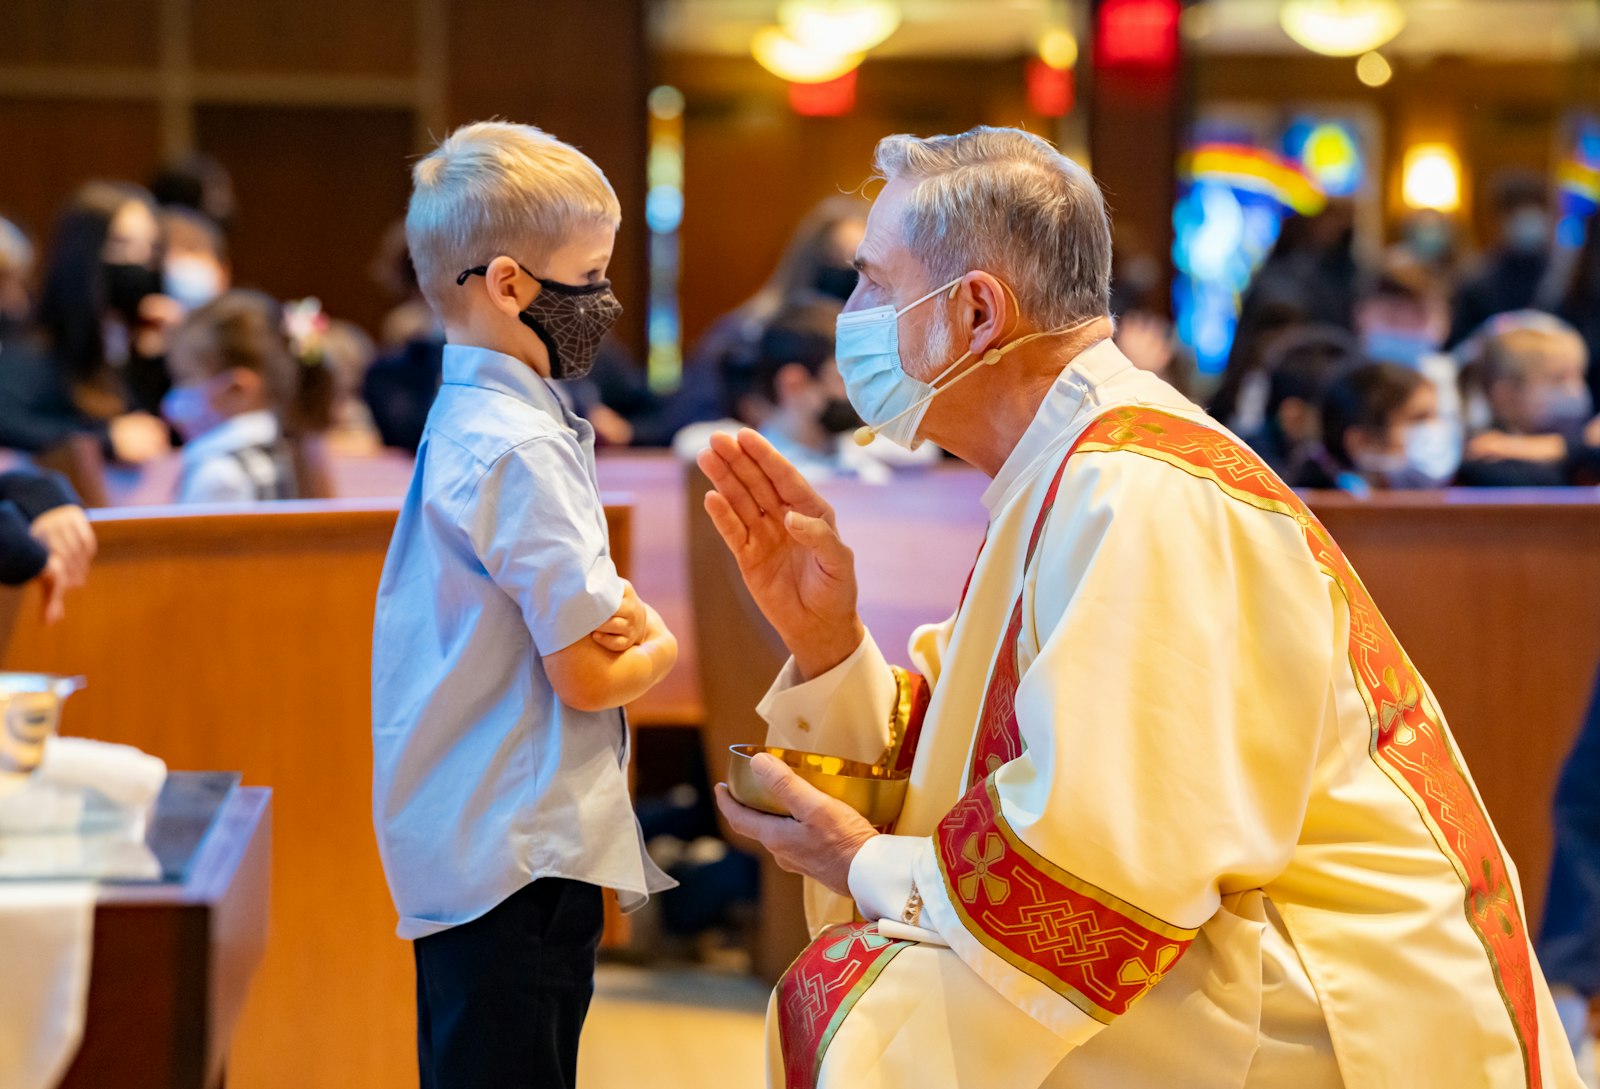 Los estudiantes de Holy Name asisten a una misa para toda la escuela a principios de noviembre. Las escuelas católicas de la Arquidiócesis de Detroit han experimentado un aumento en la inscripción a medida que los padres descubrieron los beneficios de una educación católica desde que comenzó la pandemia.